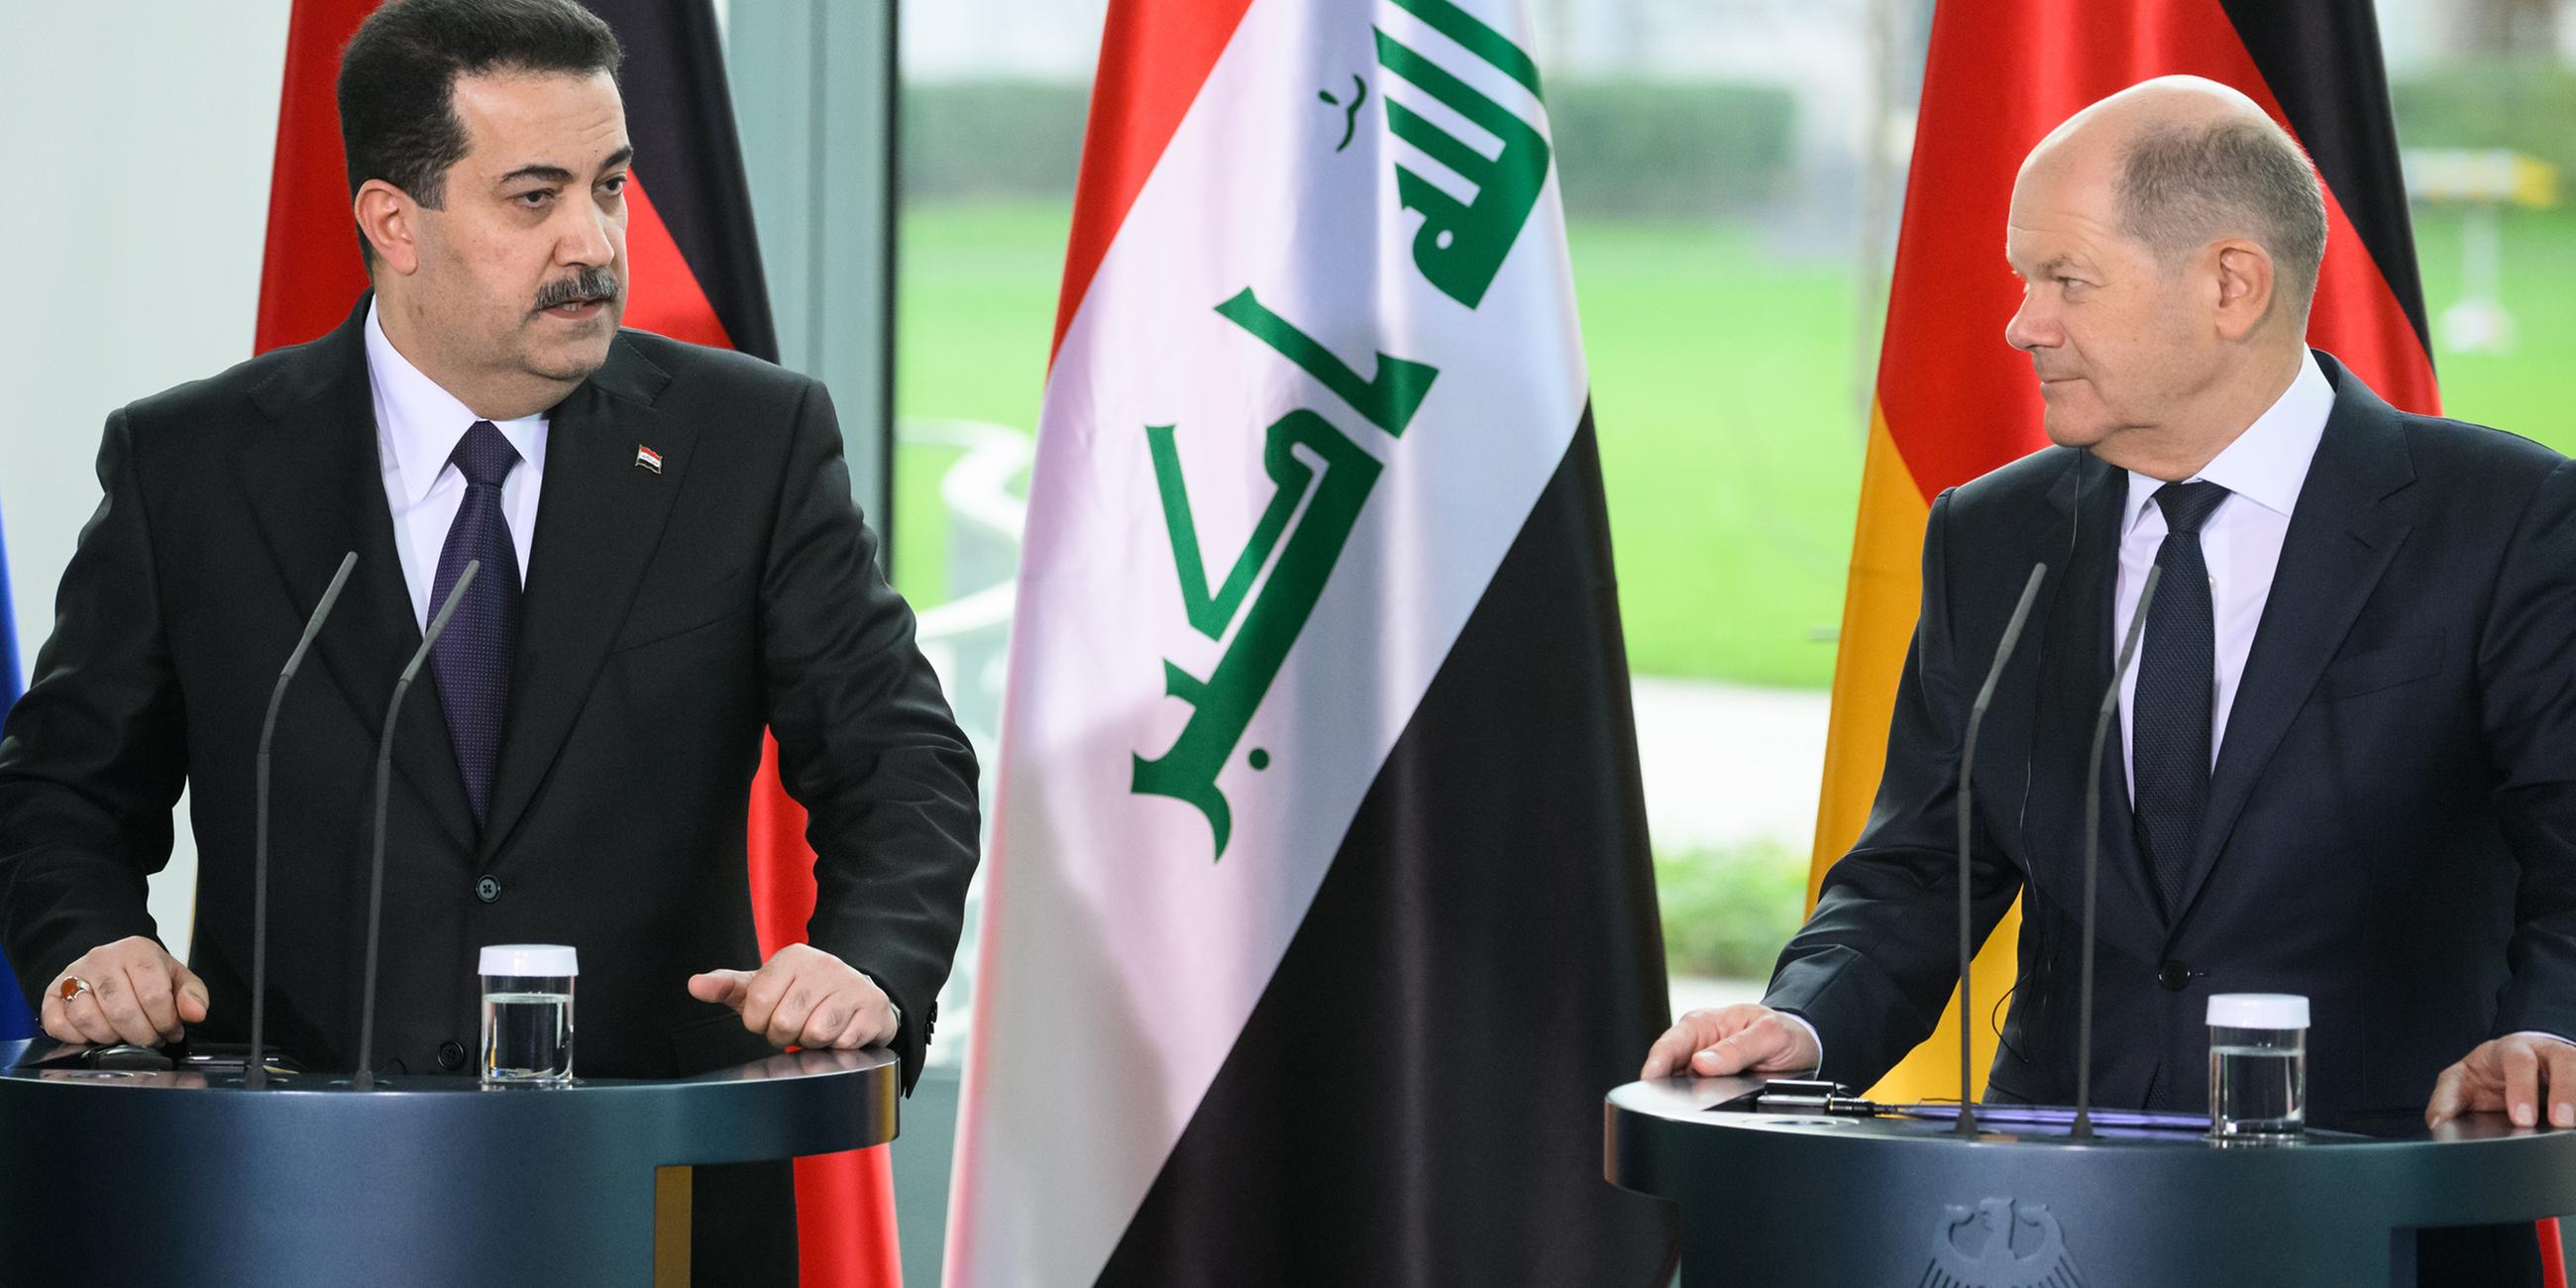 Das Bild zeigt Bundeskanzler Olaf Scholz (SPD) und Mohammed Schia al-Sudani, Ministerpräsident des Irak, bei einer Pressekonferenz nach ihrem gemeinsamen Gespräch im Bundeskanzleramt.